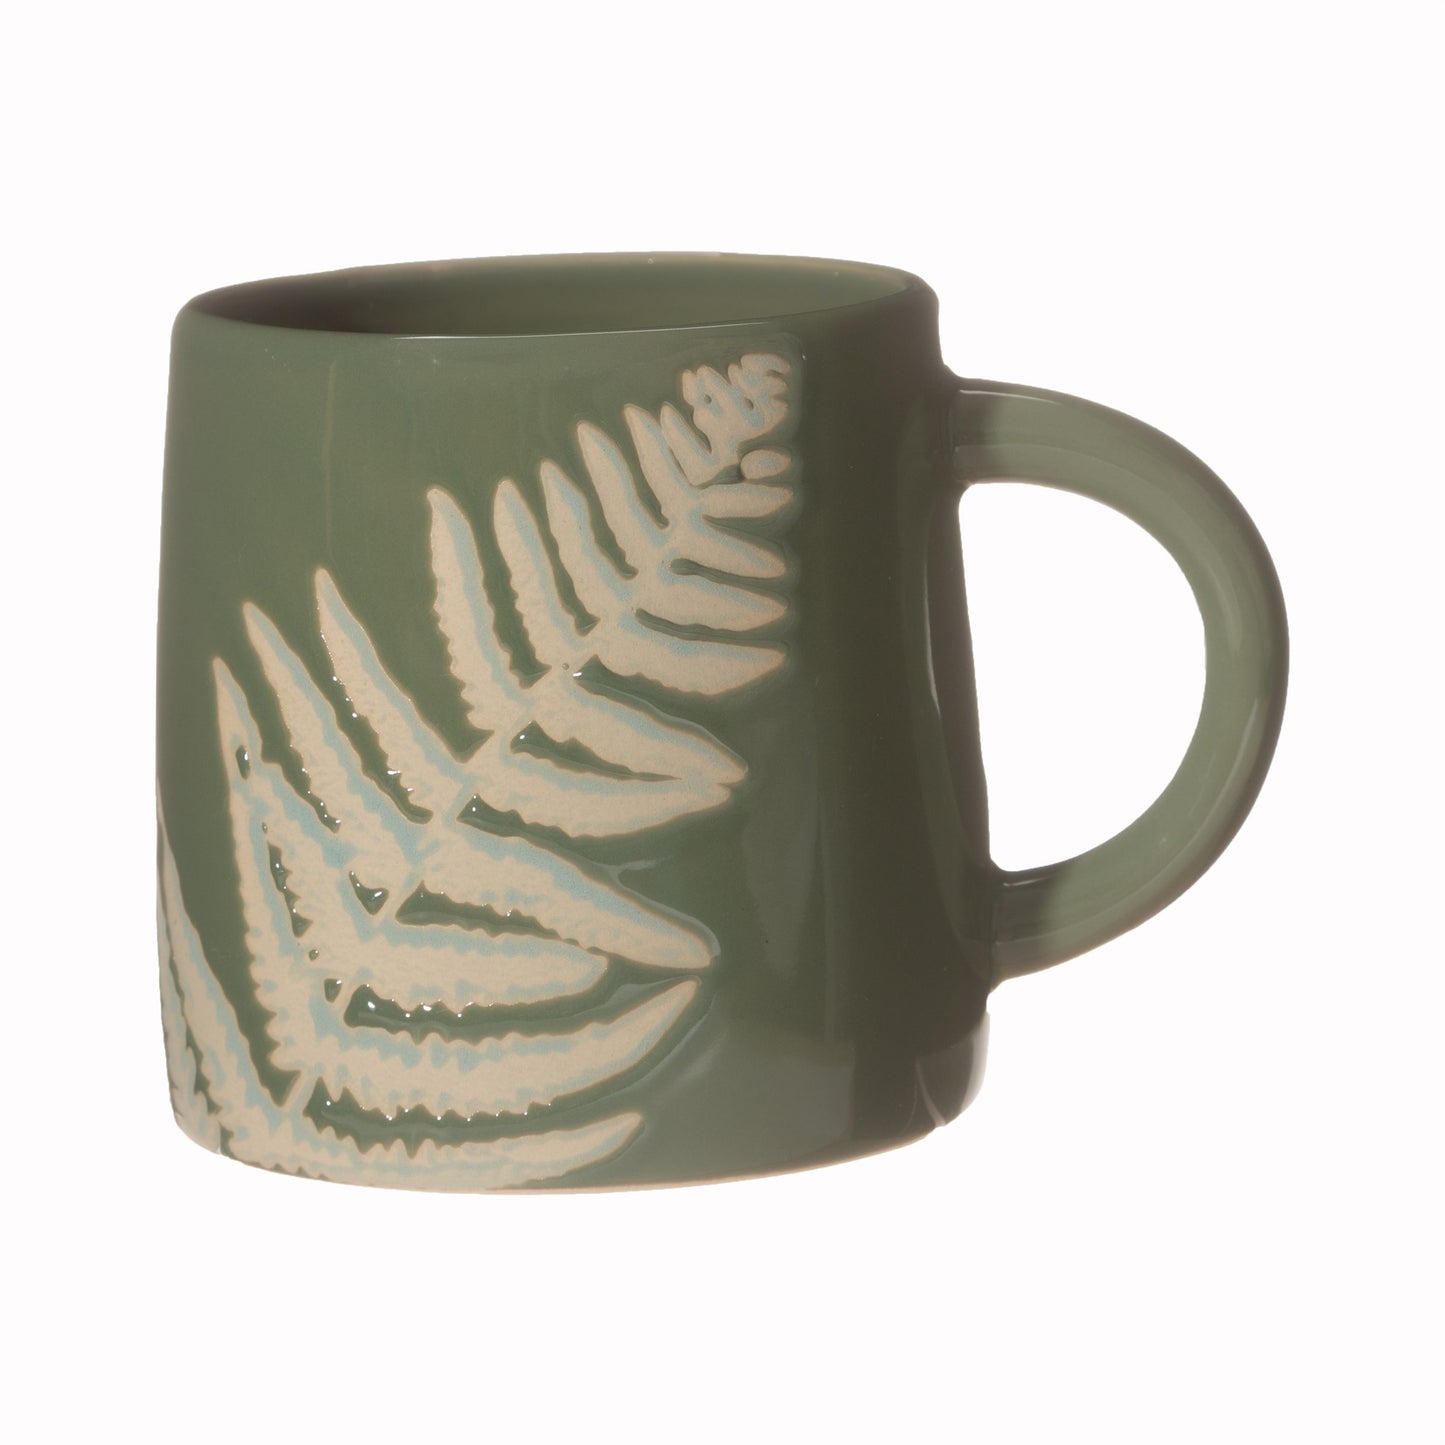 Fern Leaf Mug - Green